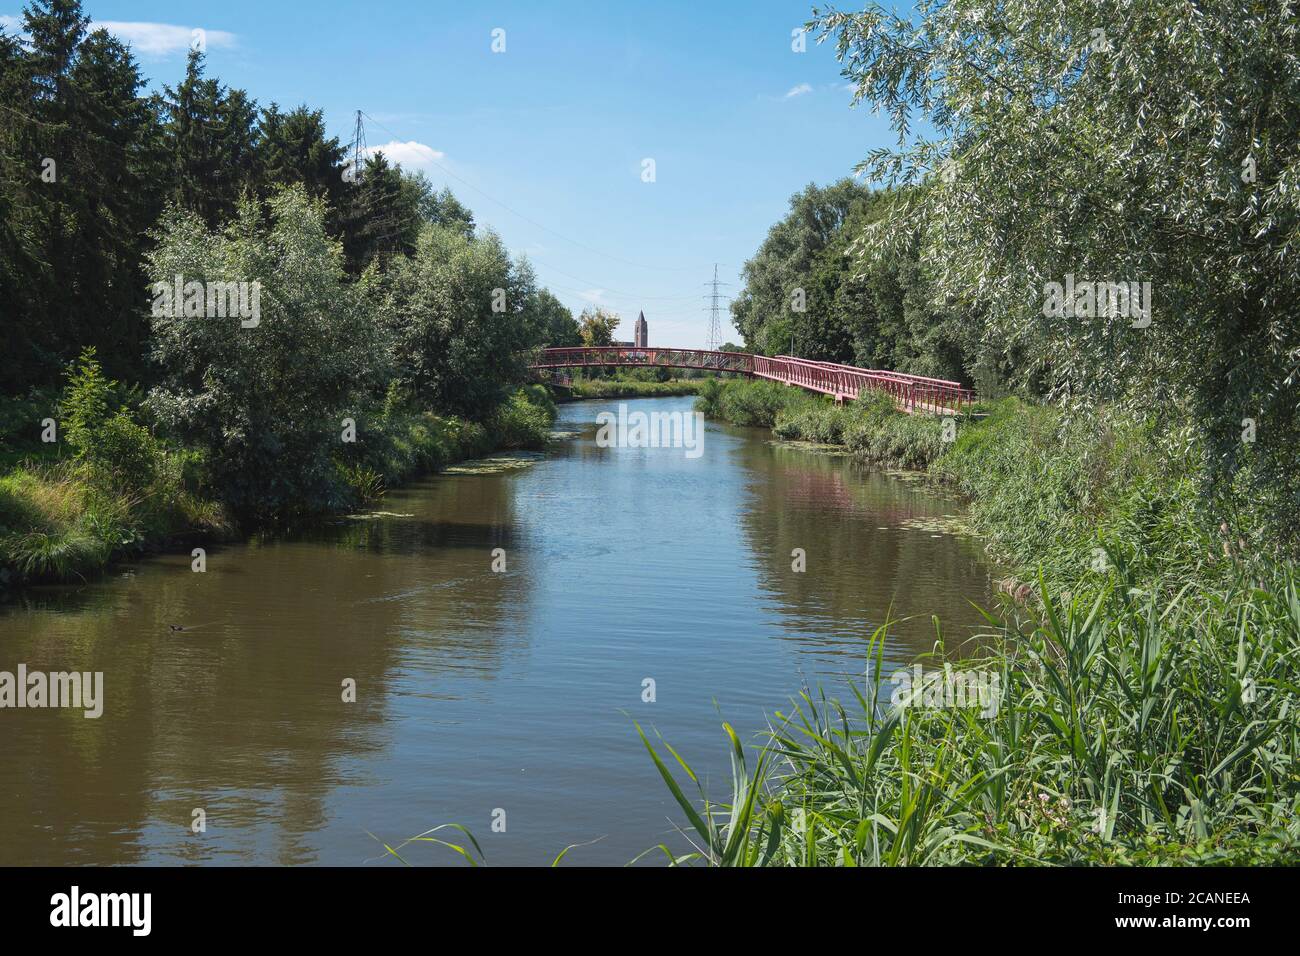 Lokeren, Belgique, photo de paysage avec une rivière, une passerelle et une tour d'église au loin Banque D'Images